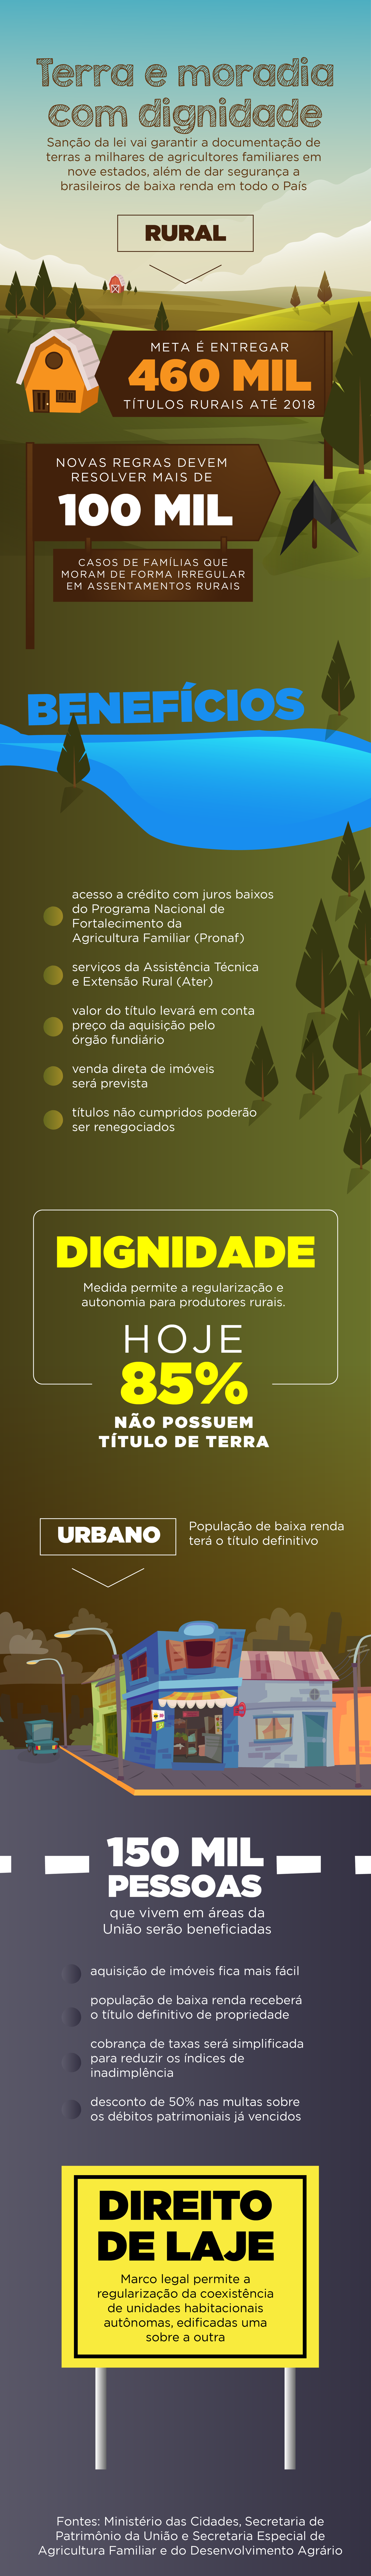 Portal Brasil